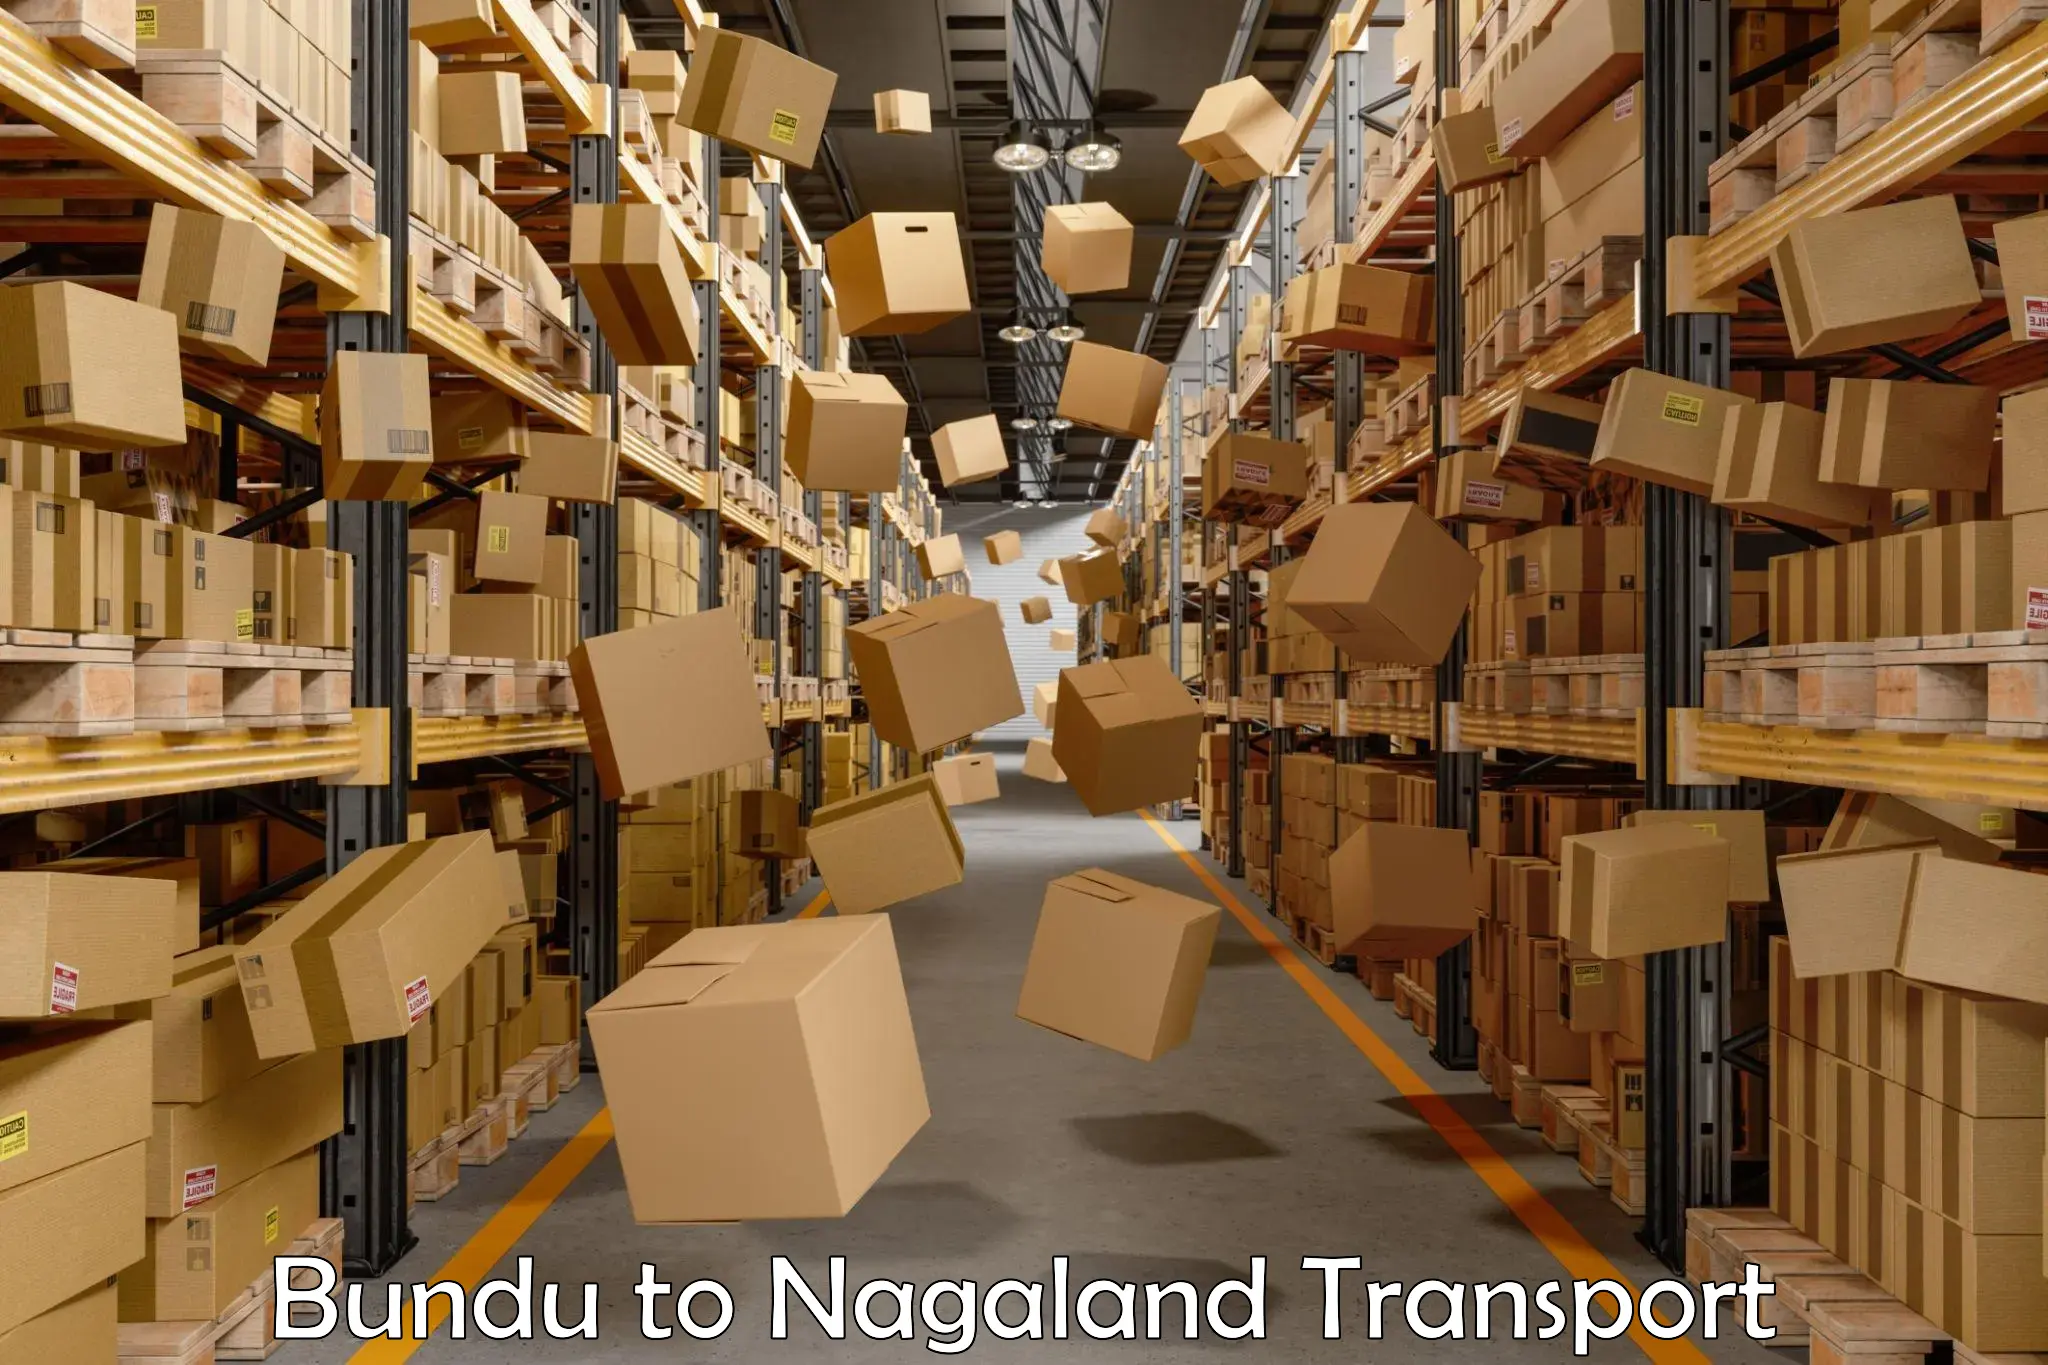 Online transport in Bundu to NIT Nagaland